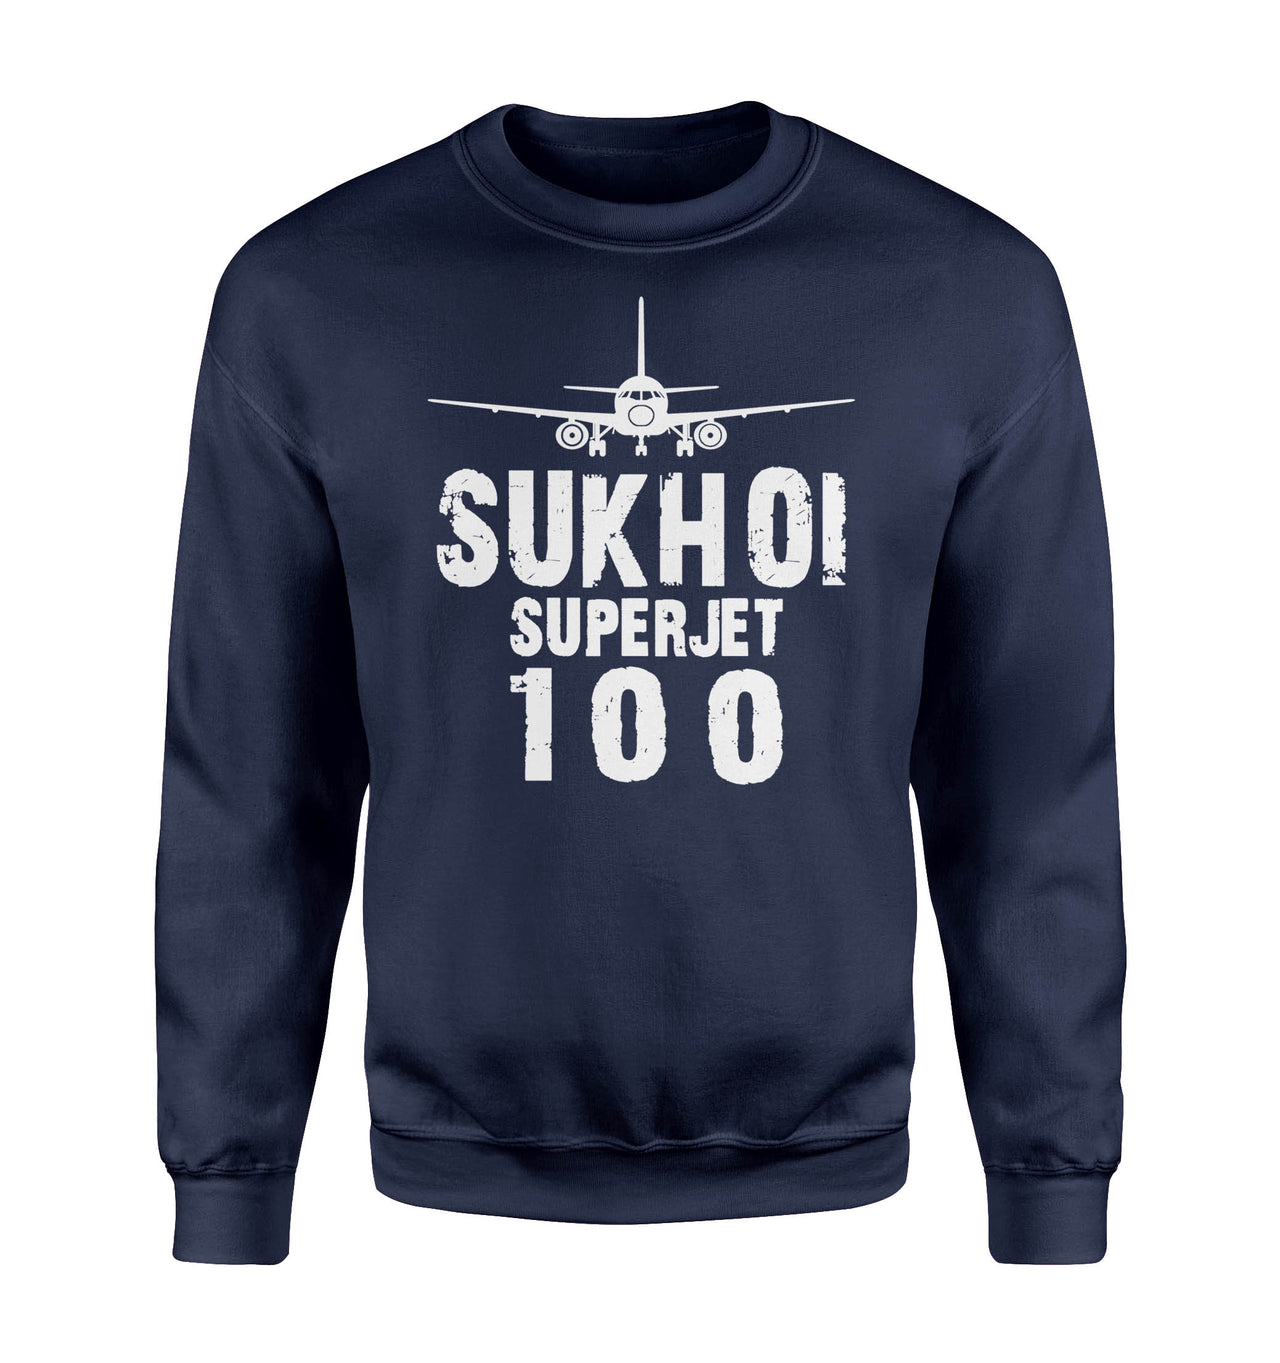 Sukhoi Superjet 100 & Plane Designed Sweatshirts